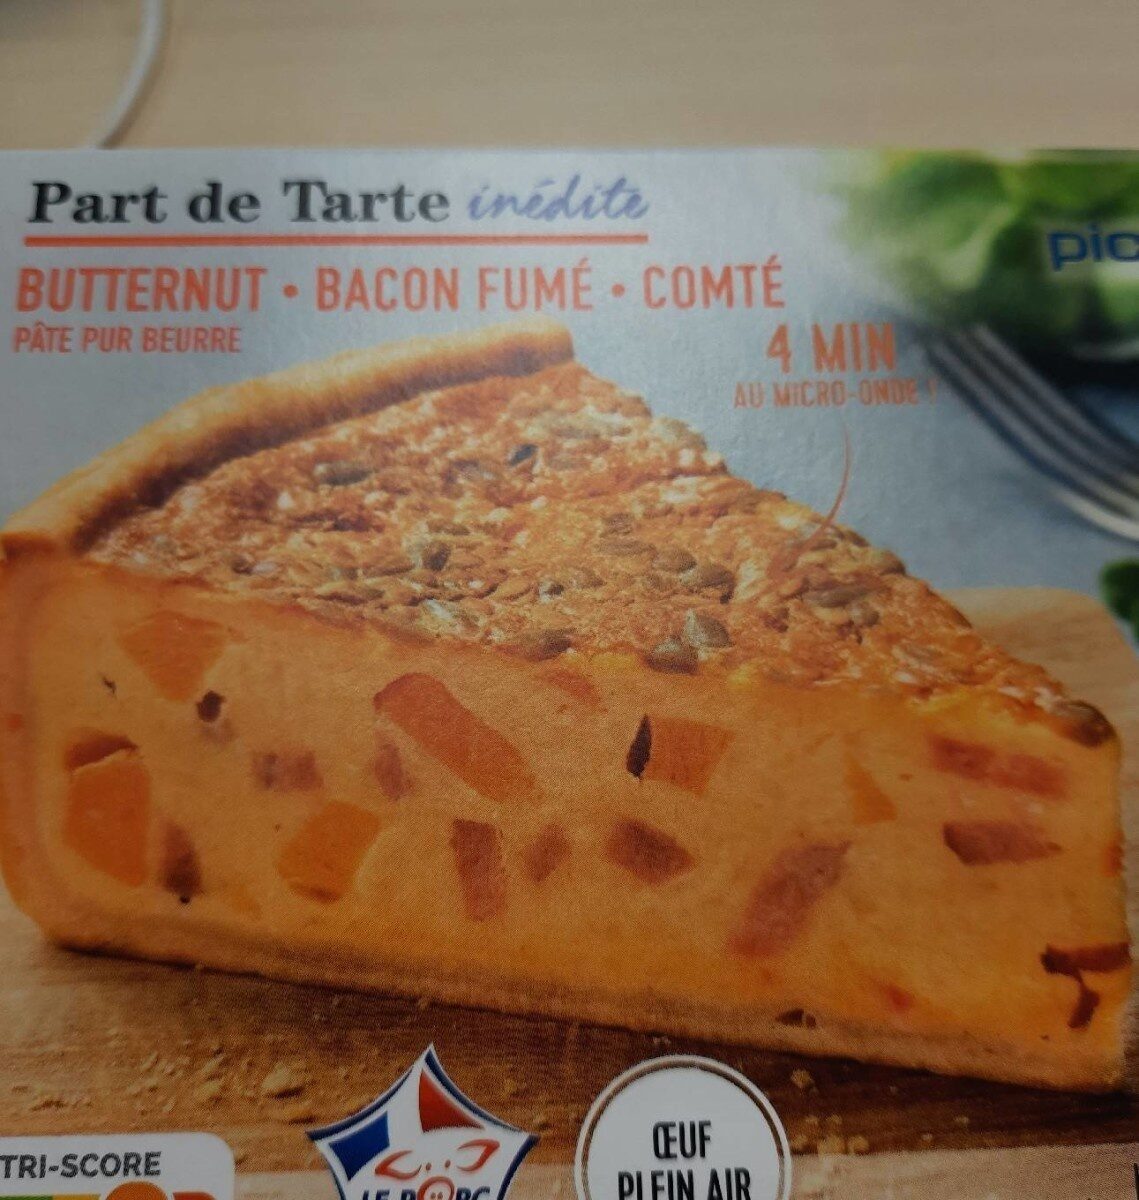 Part de tarte butternut bacon fumé comté - Produkt - fr